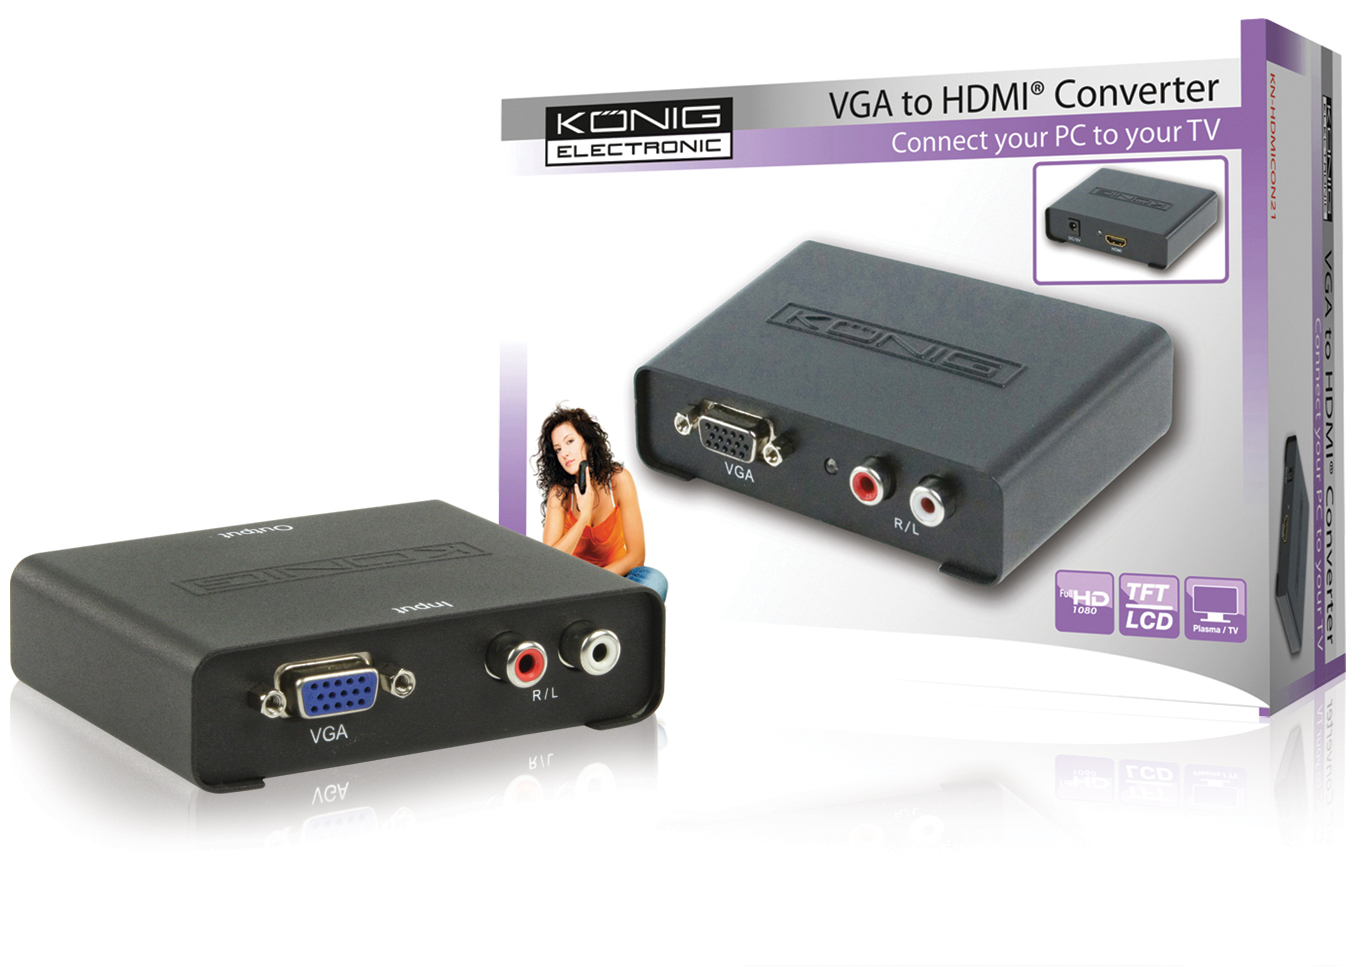 Prøv det voldtage fedme VGA til HDMI converter | Elektronik Lavpris Aps